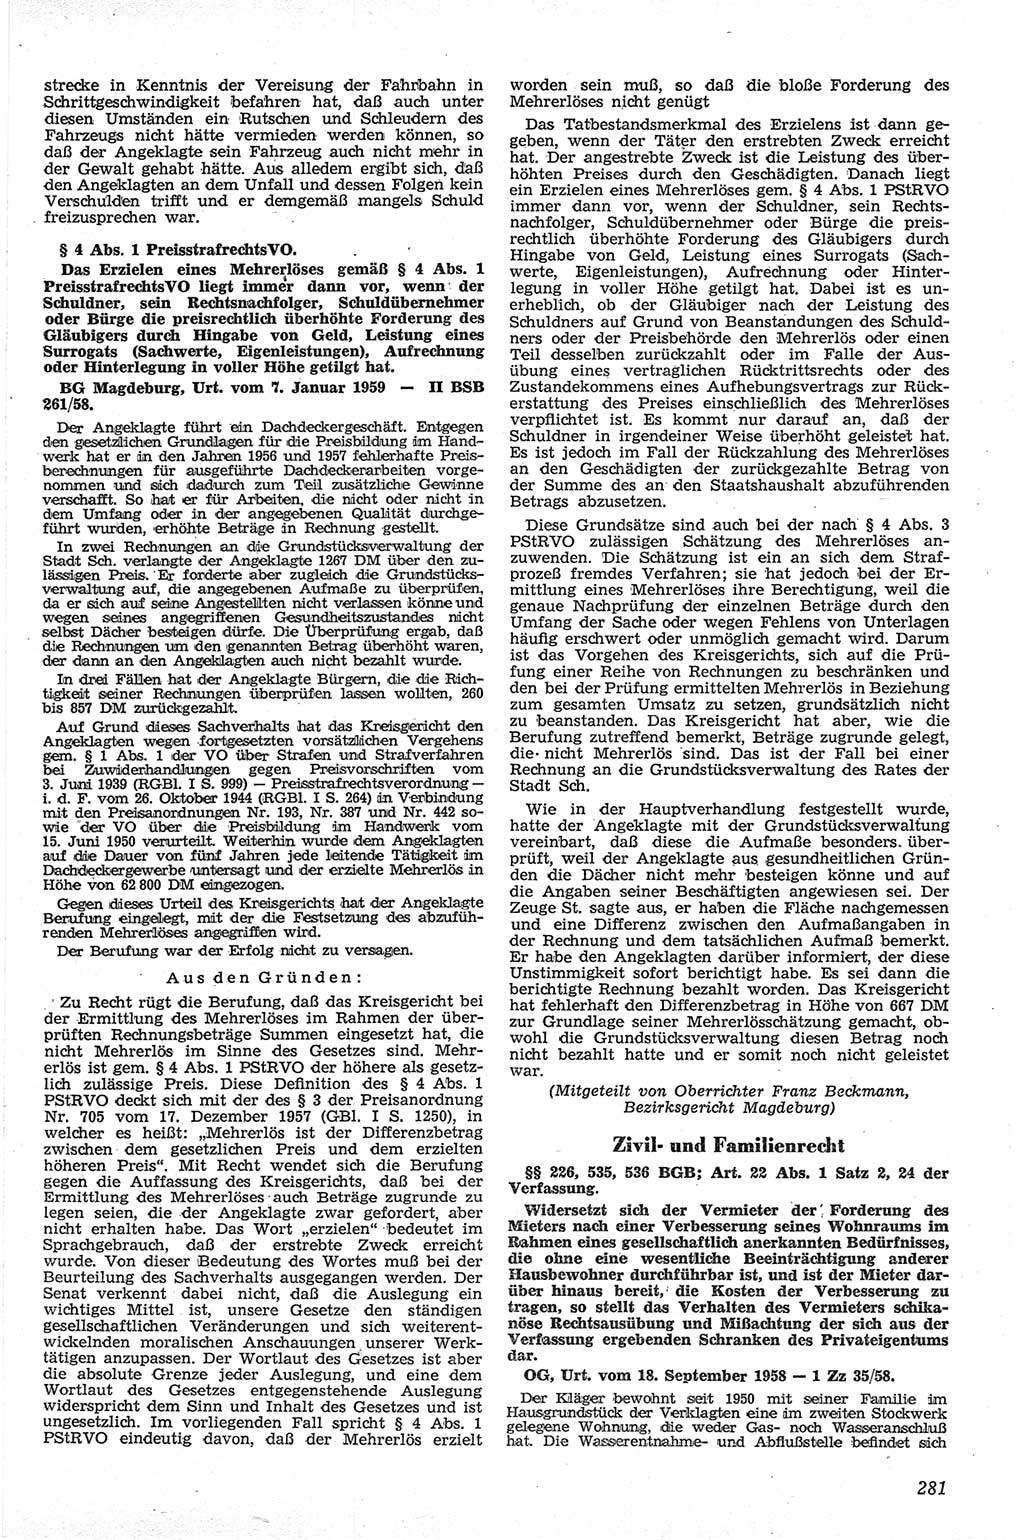 Neue Justiz (NJ), Zeitschrift für Recht und Rechtswissenschaft [Deutsche Demokratische Republik (DDR)], 13. Jahrgang 1959, Seite 281 (NJ DDR 1959, S. 281)